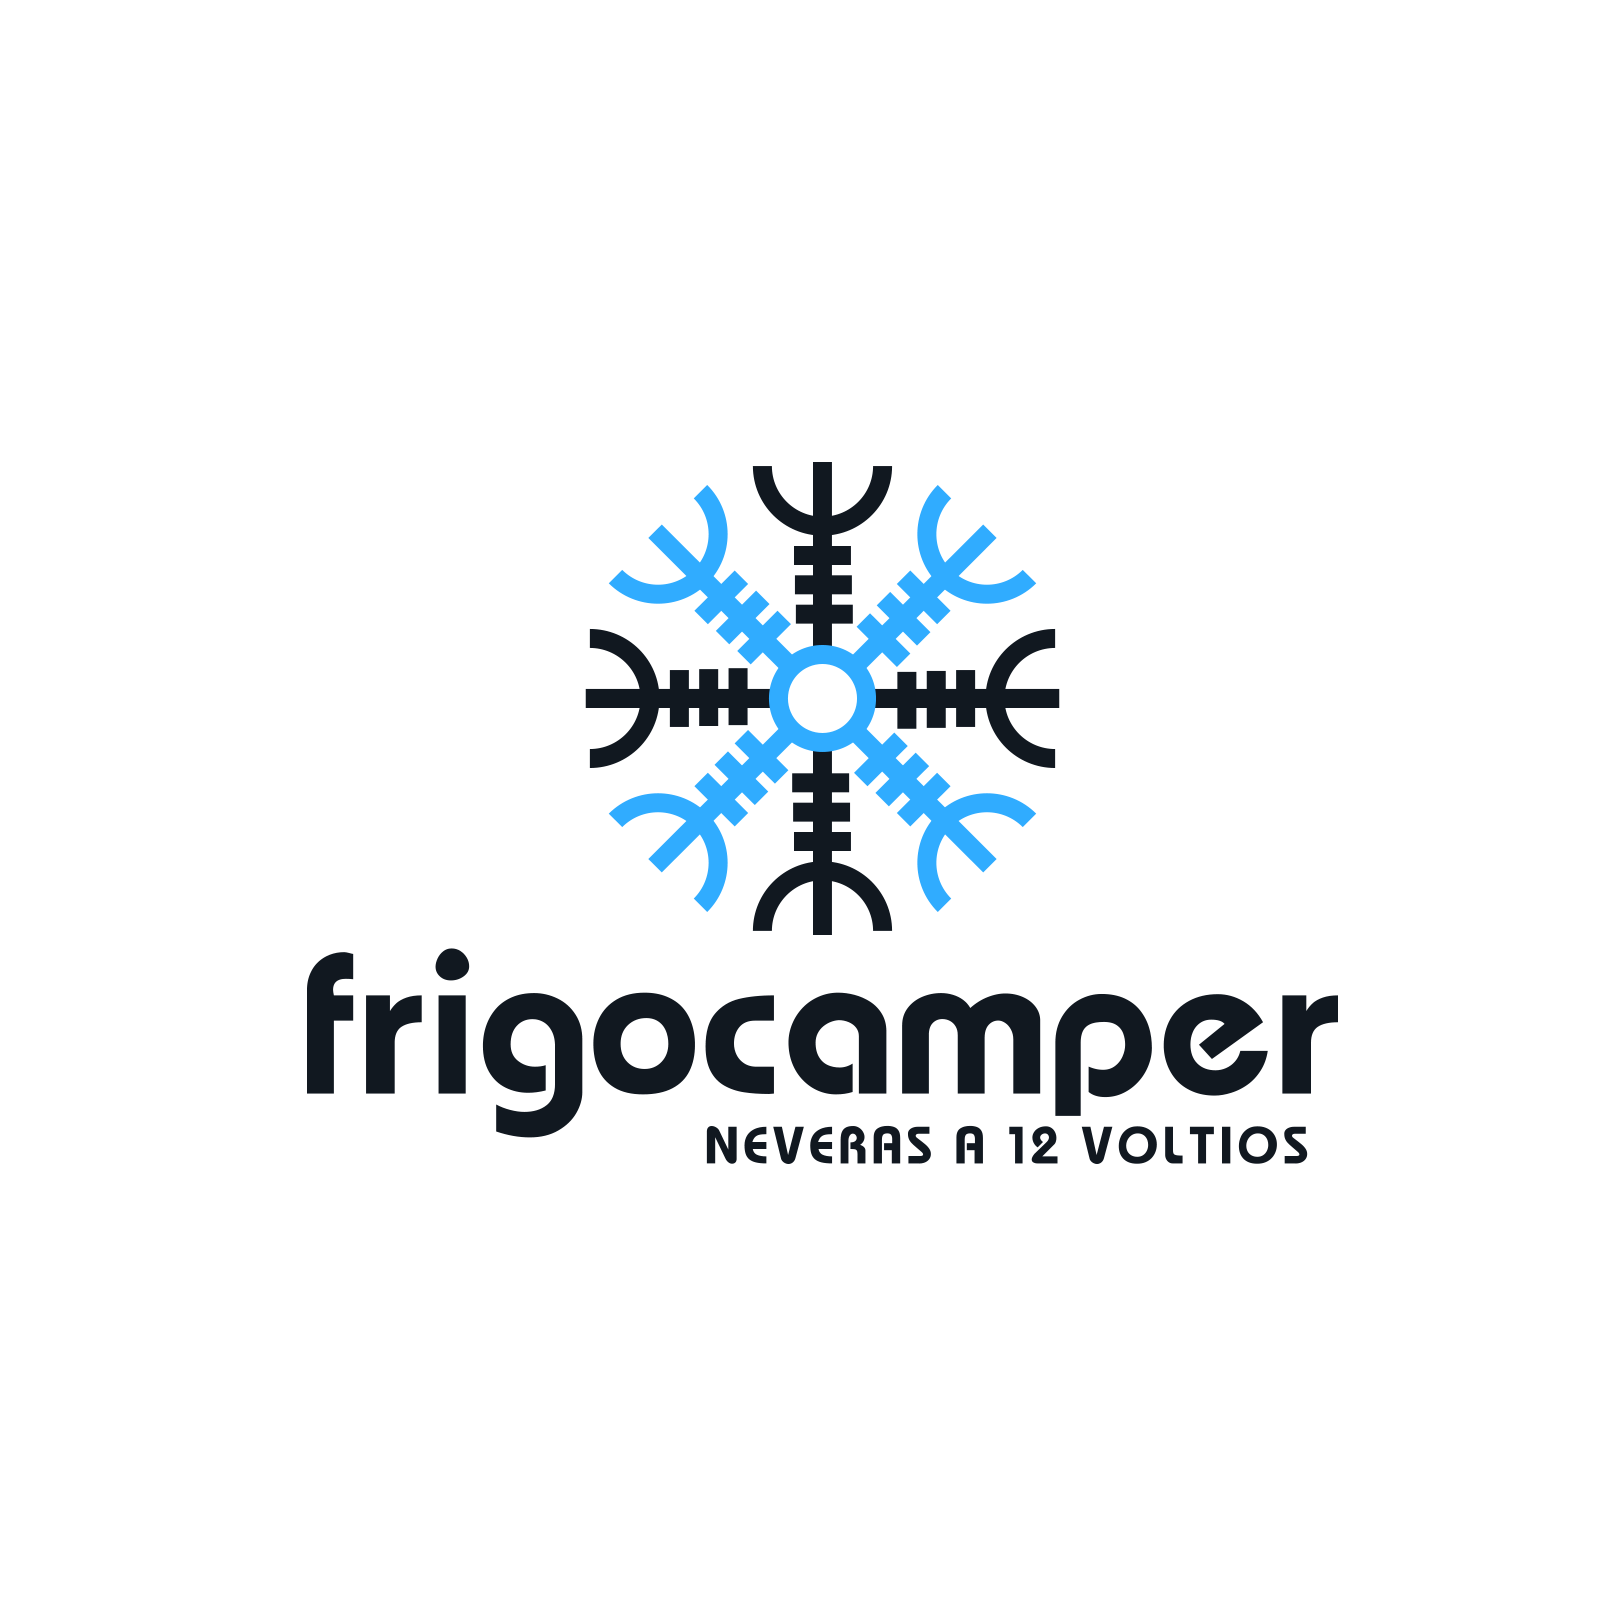 FC80 Nevera a 12 voltios (80 Litros) - Frigocamper